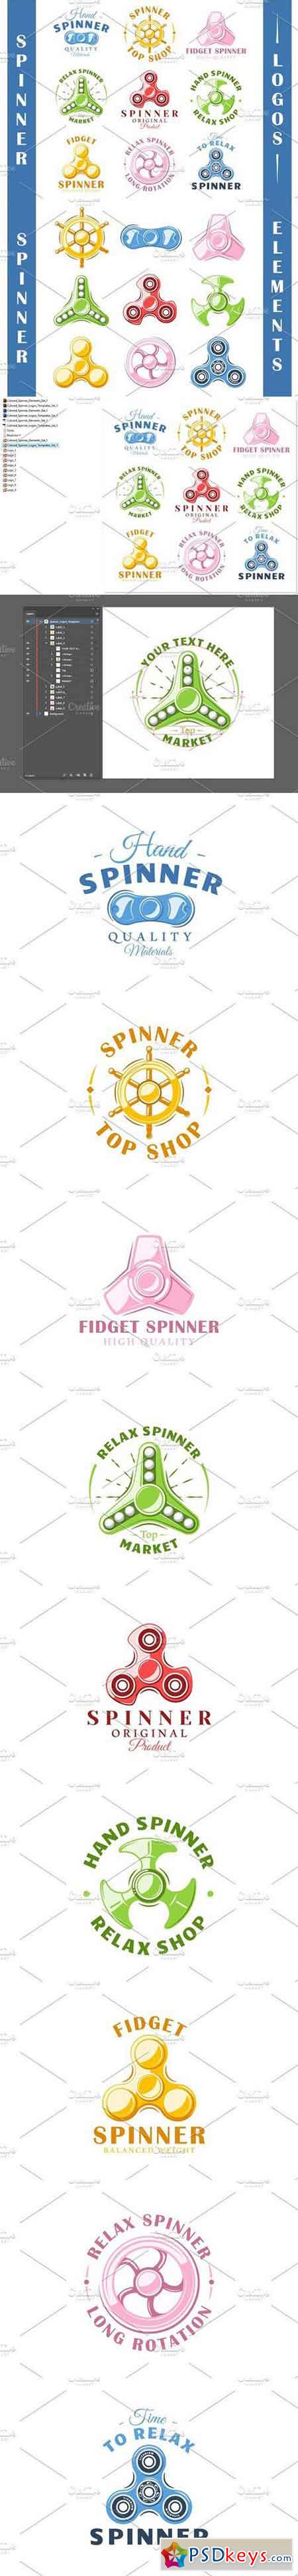 9 Spinner Logos Templates Vol.1 1663345